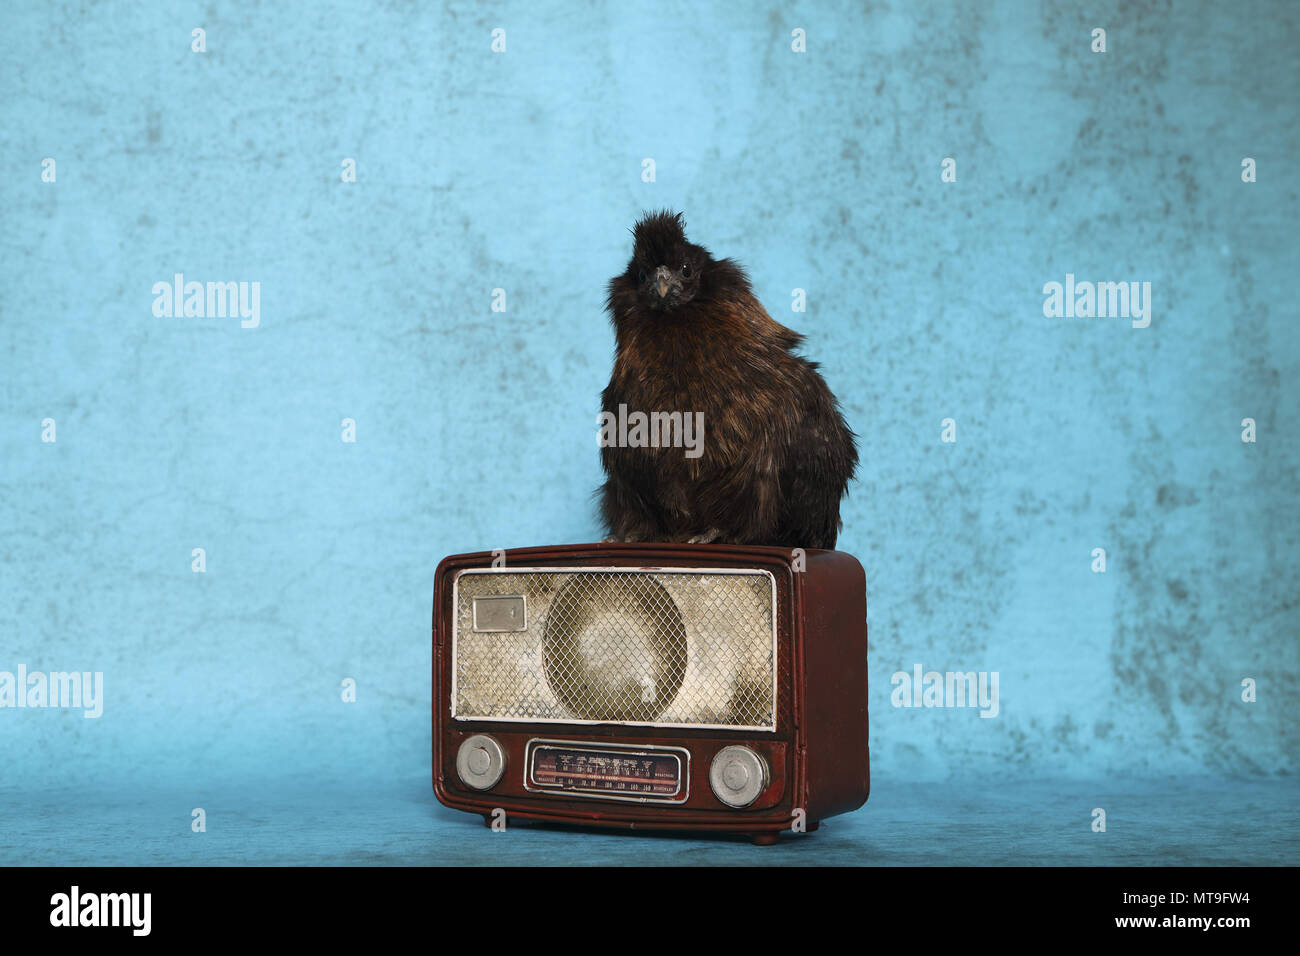 Pollo domestico, Silkie, vellutata. Adulto in piedi su una vecchia radio. Studio immagine Foto Stock